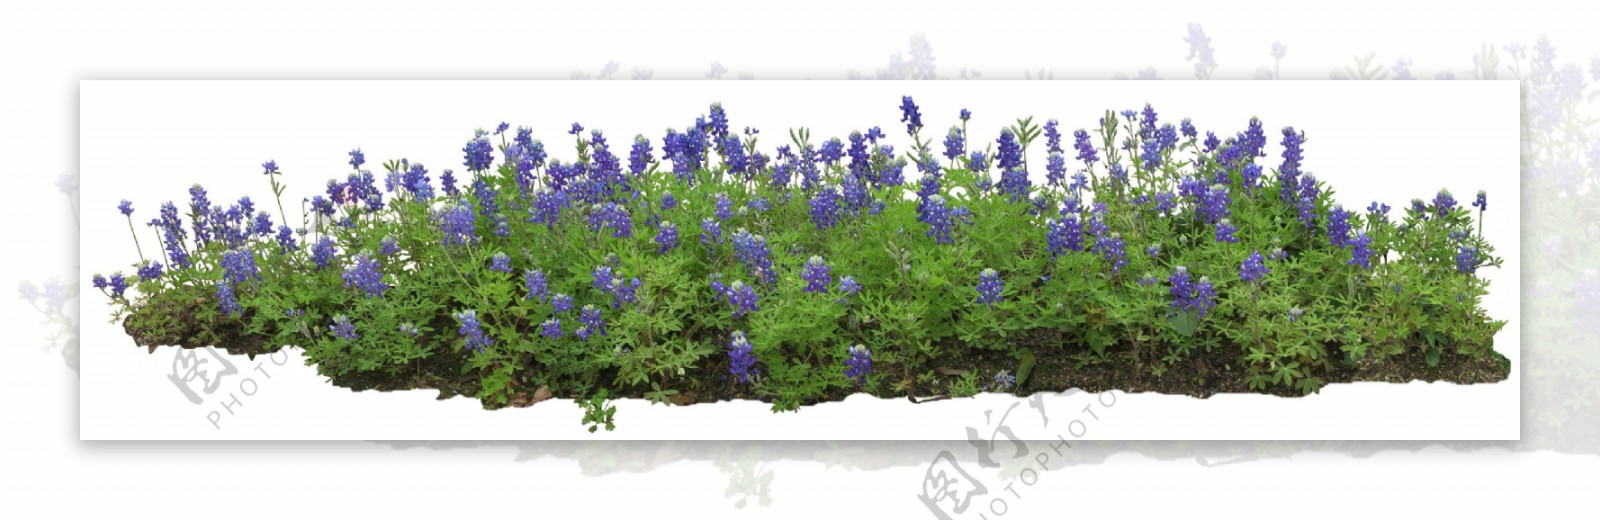 绿色草坪紫花png元素素材